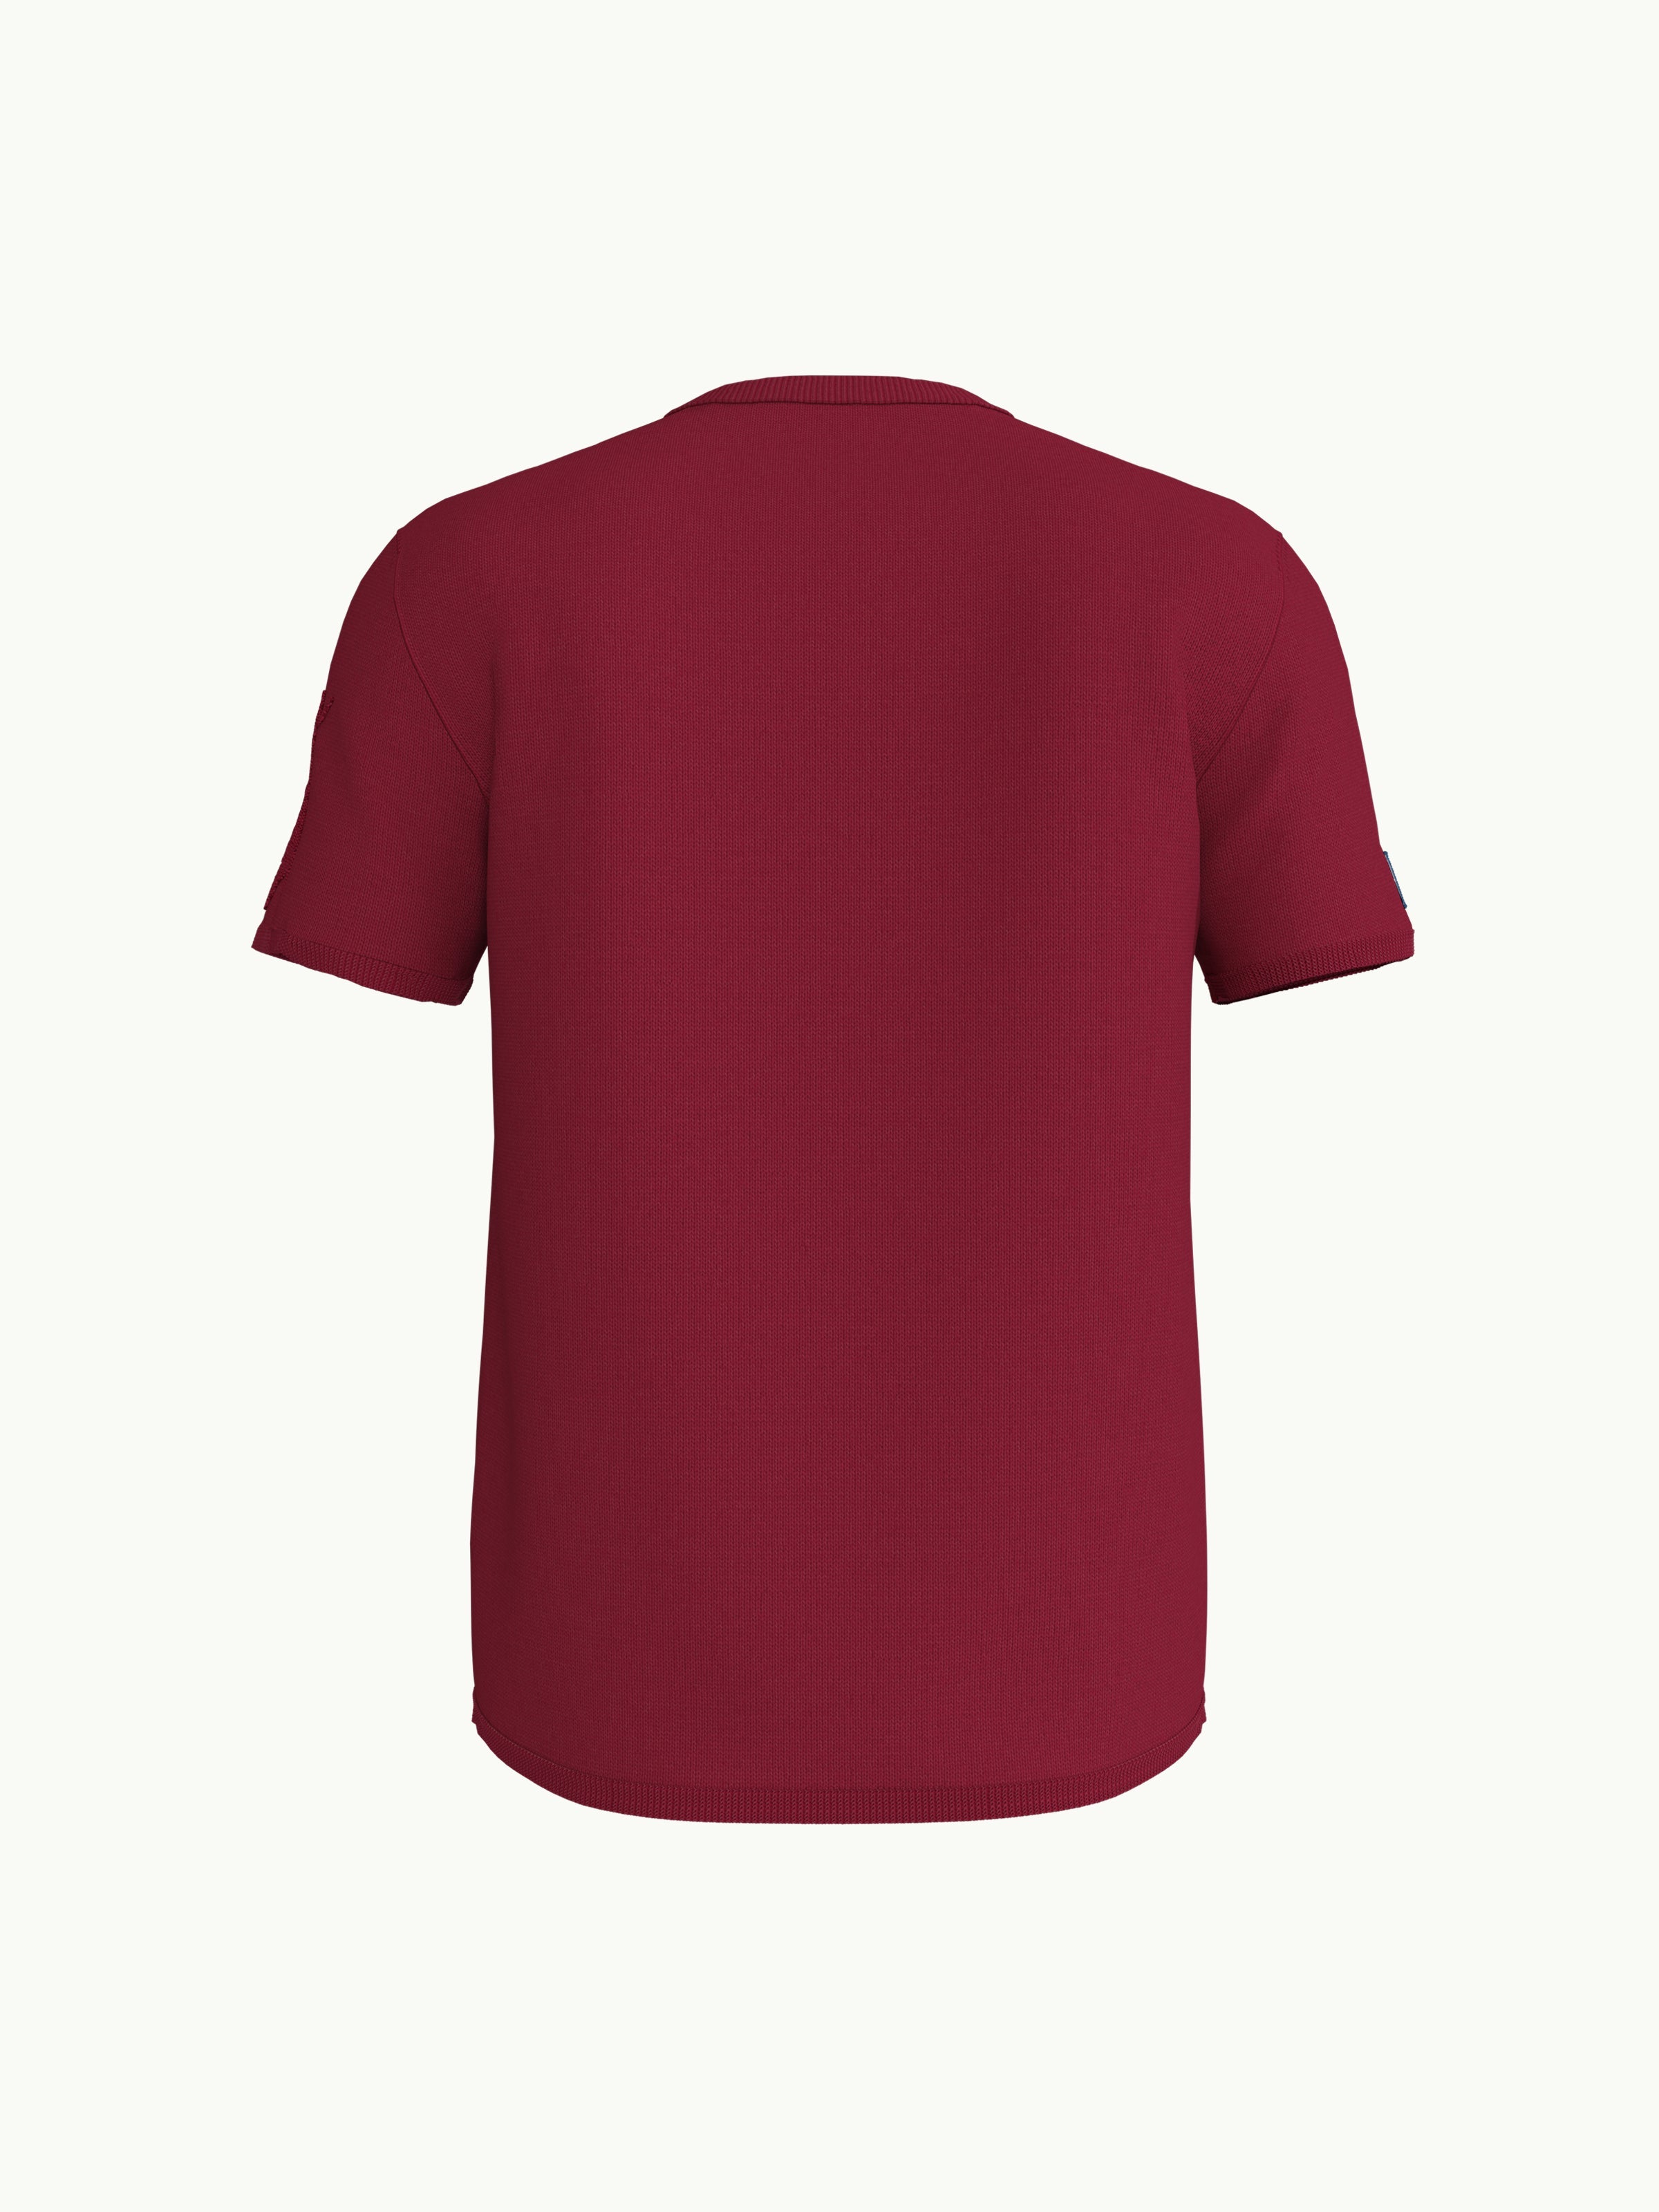 Women's T-Shirt - Mountain Frog Crimson